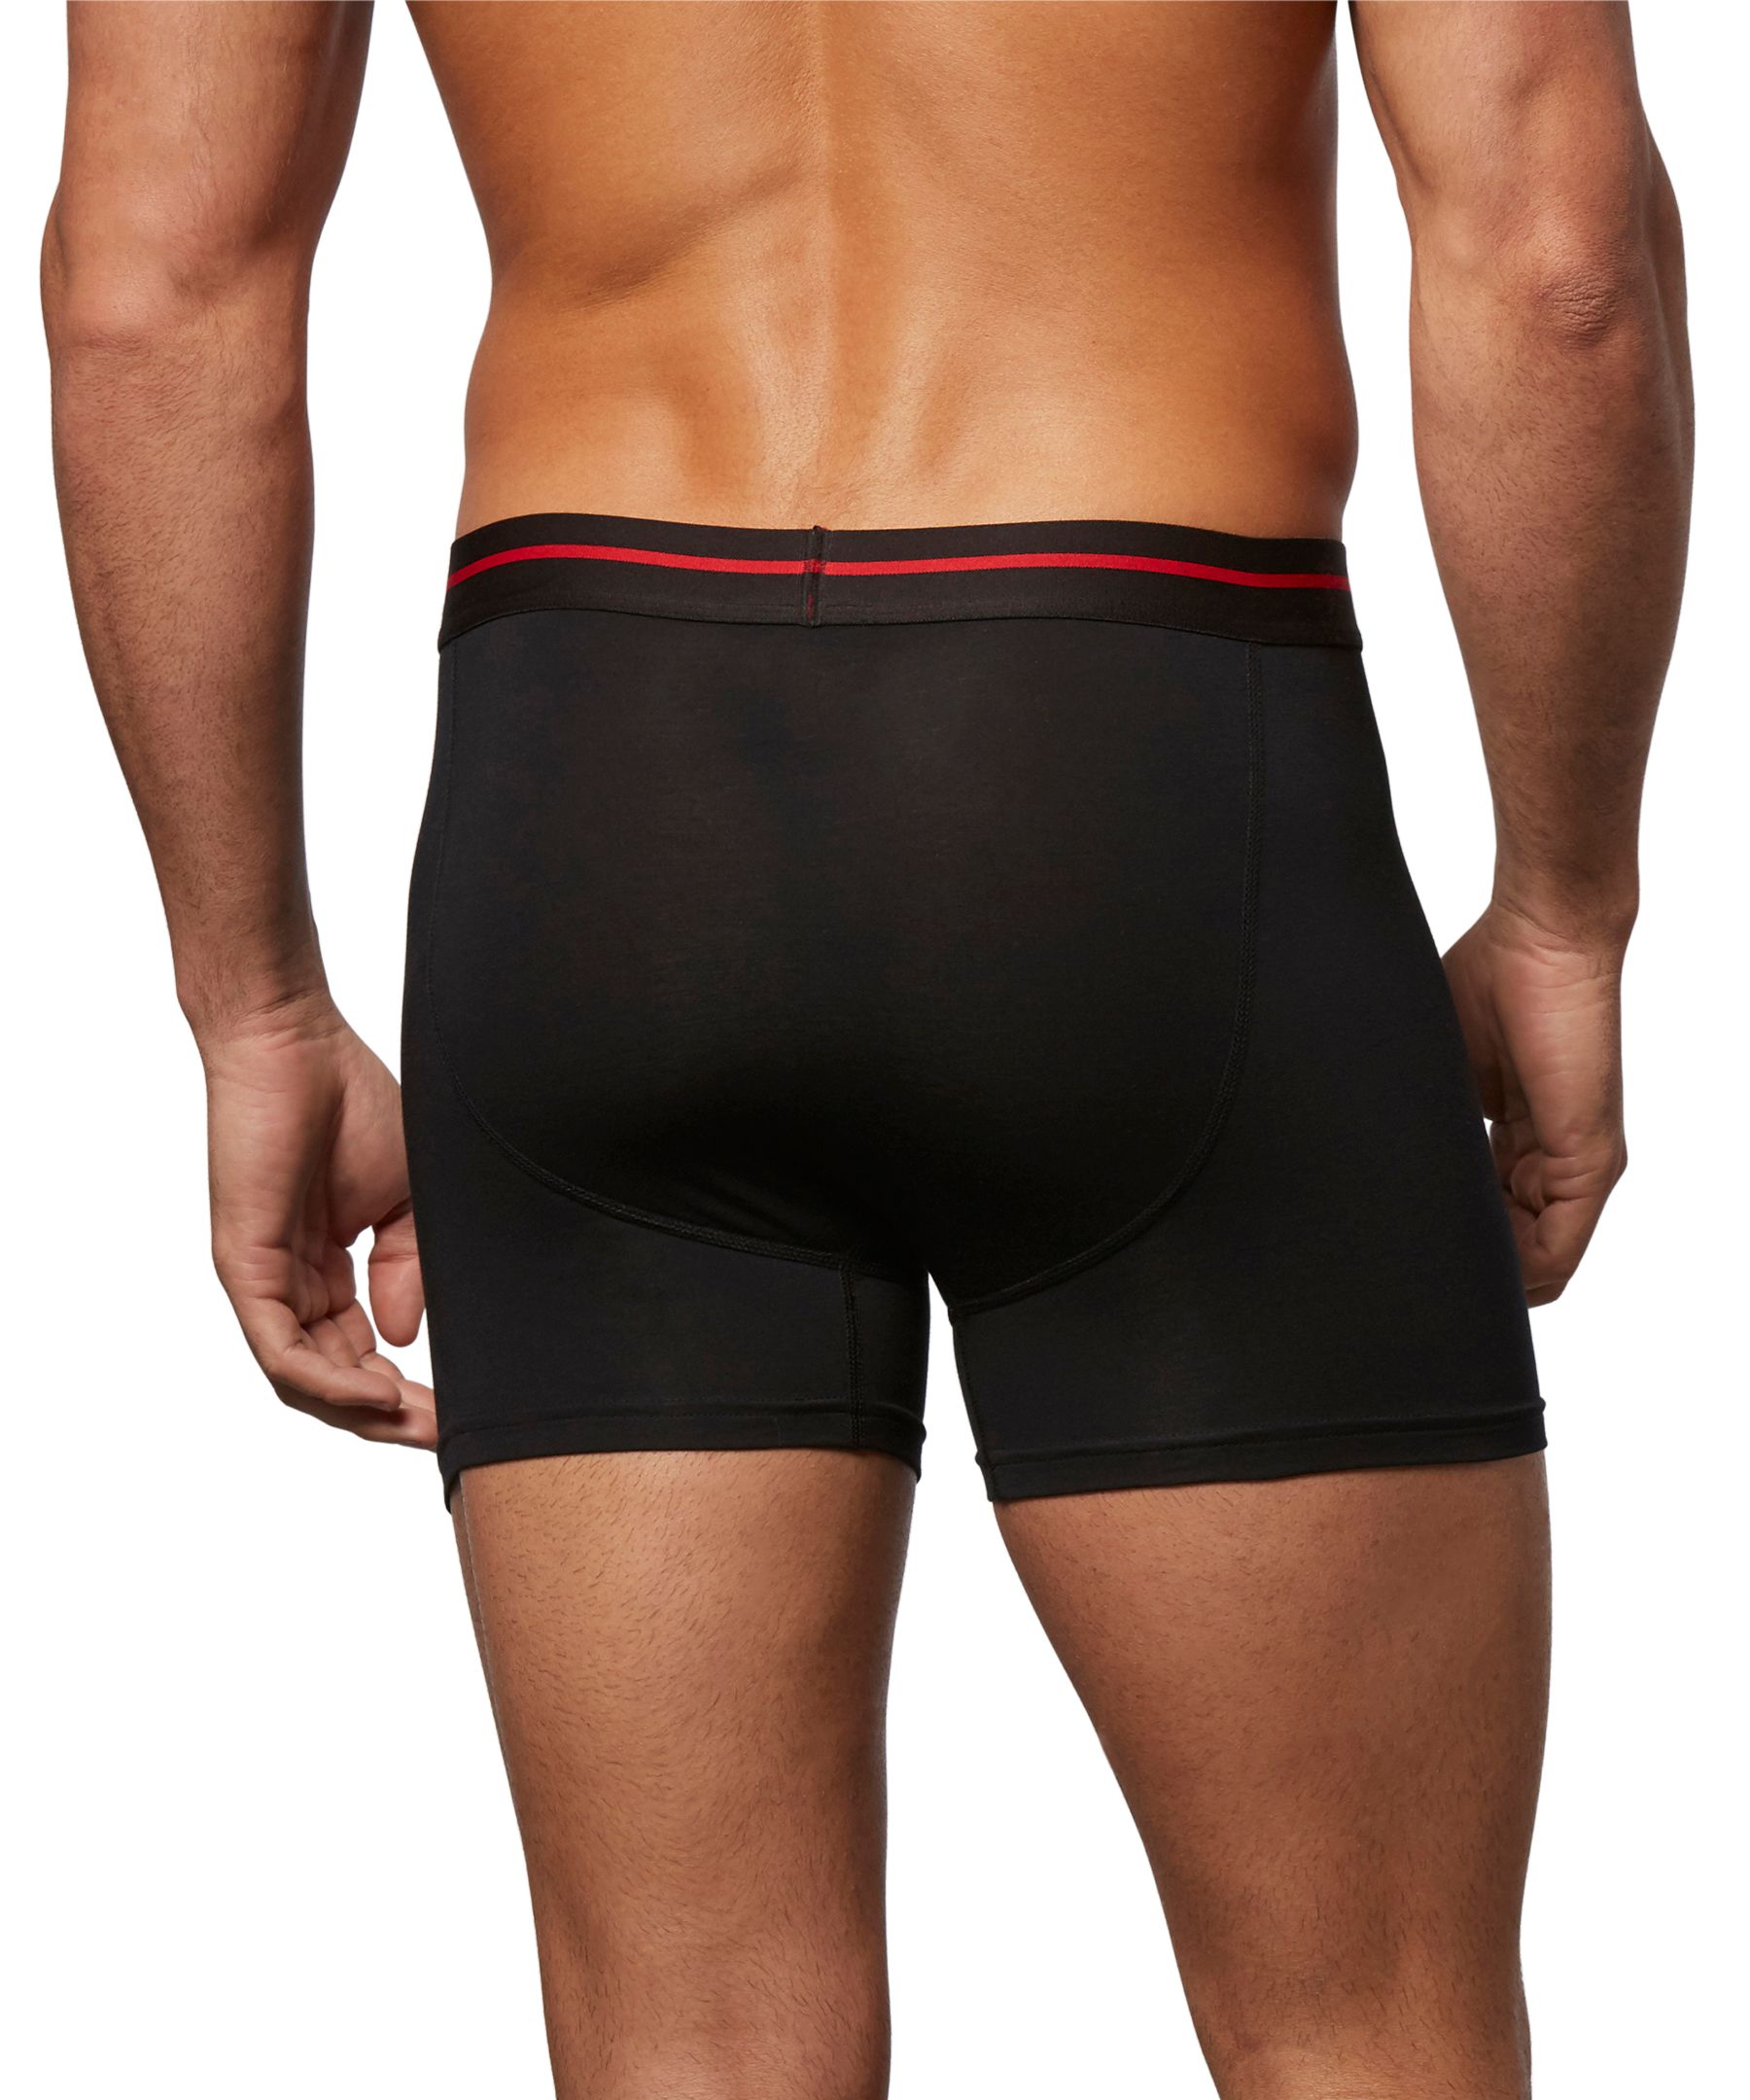 Denver Hayes Men's All Day Comfort Boxer Briefs Underwear